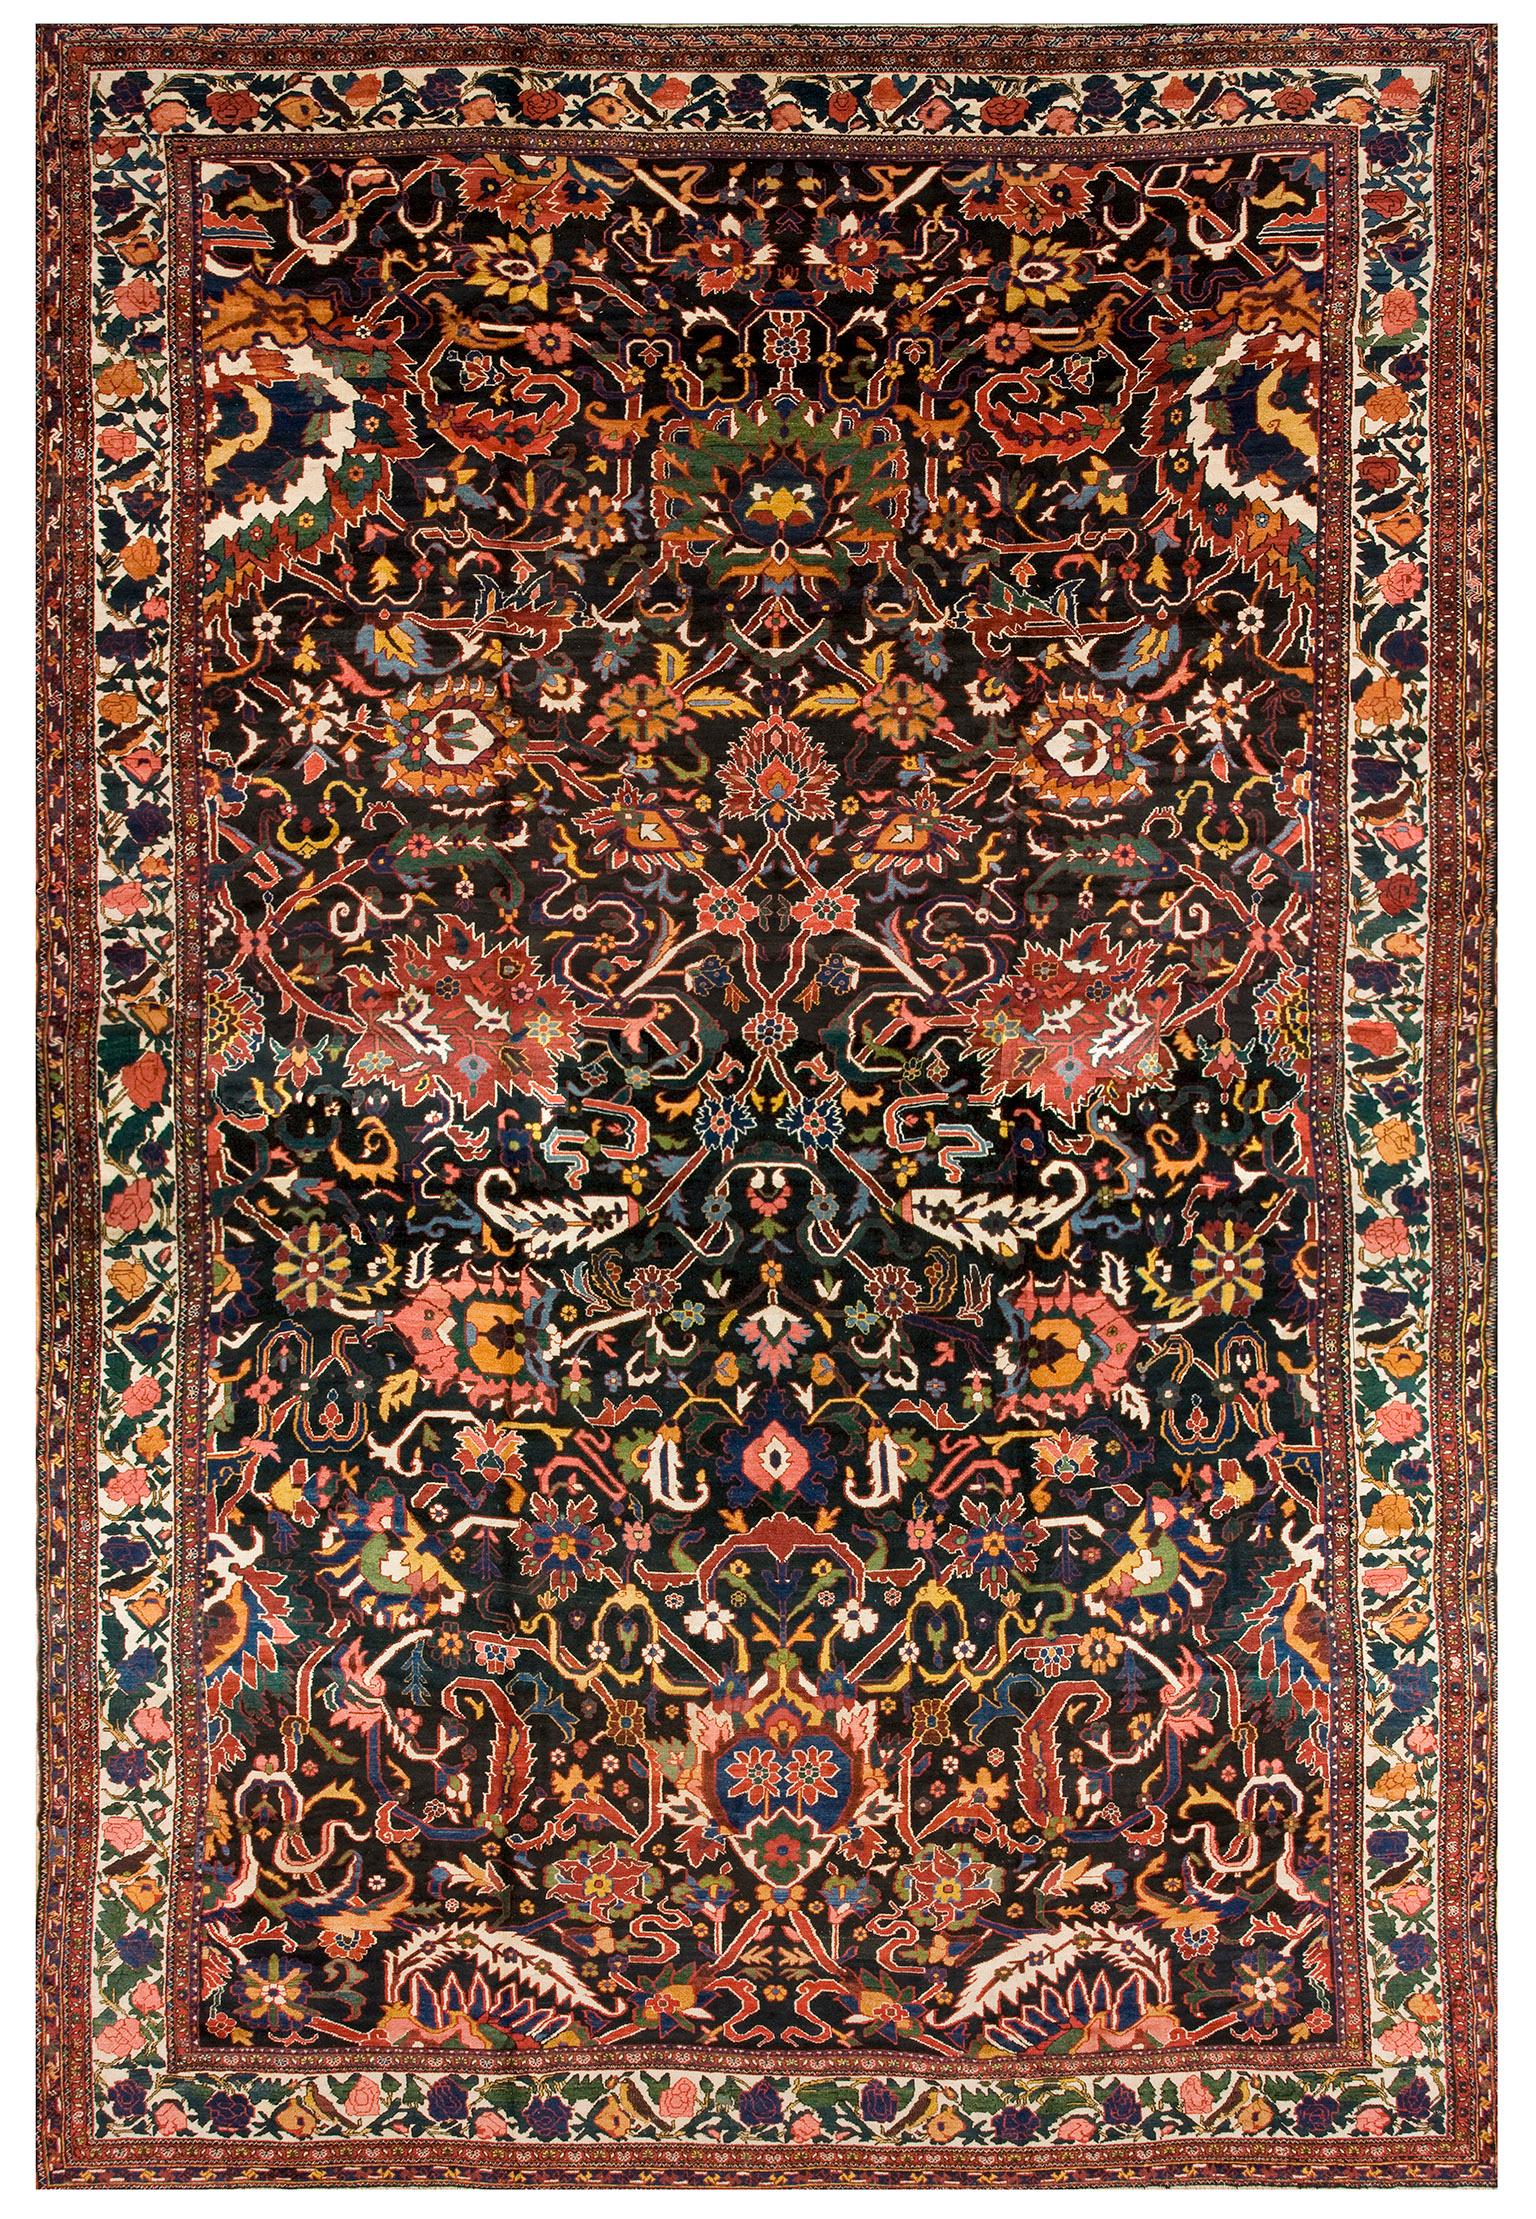 Early 20th Century Persian Bakhtiari Carpet ( 16' x 23' - 487 x 702 )